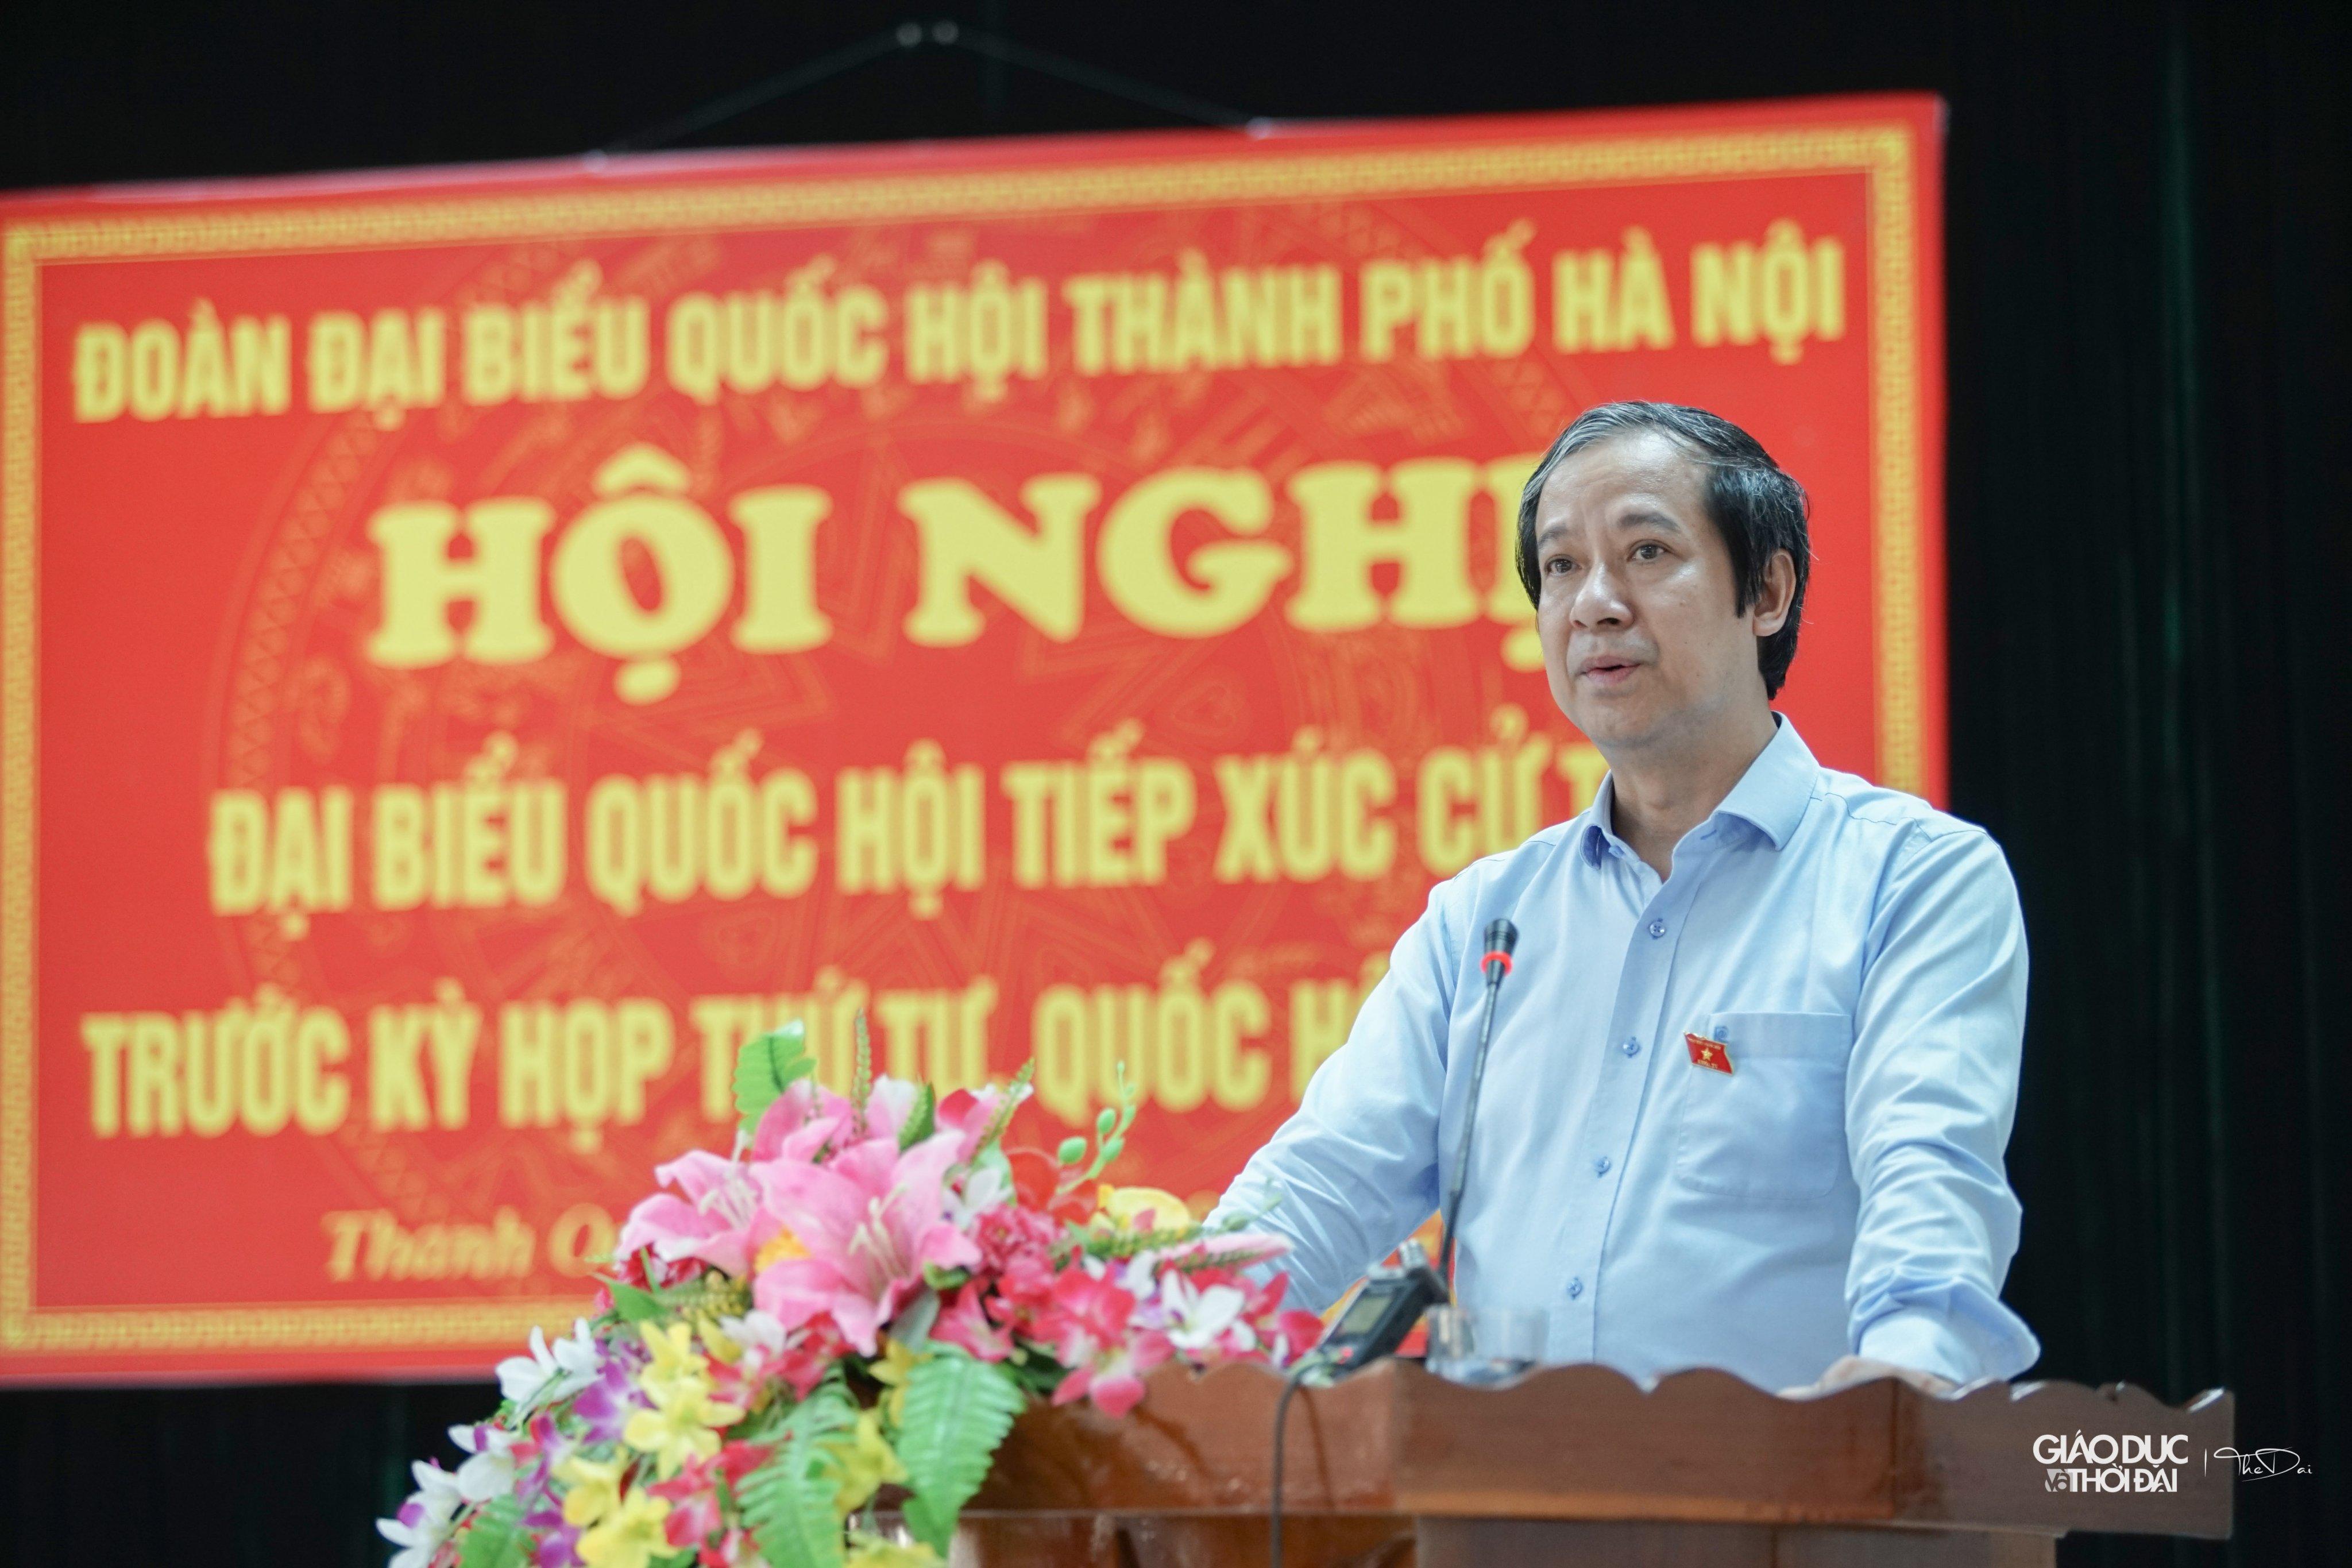 Bộ trưởng Bộ GD&ĐT Nguyễn Kim Sơn phát biểu tại Hội nghị đại biểu quốc hội tiếp xúc cử tri trước kỳ họp thứ 4, Quốc hội khóa XV.